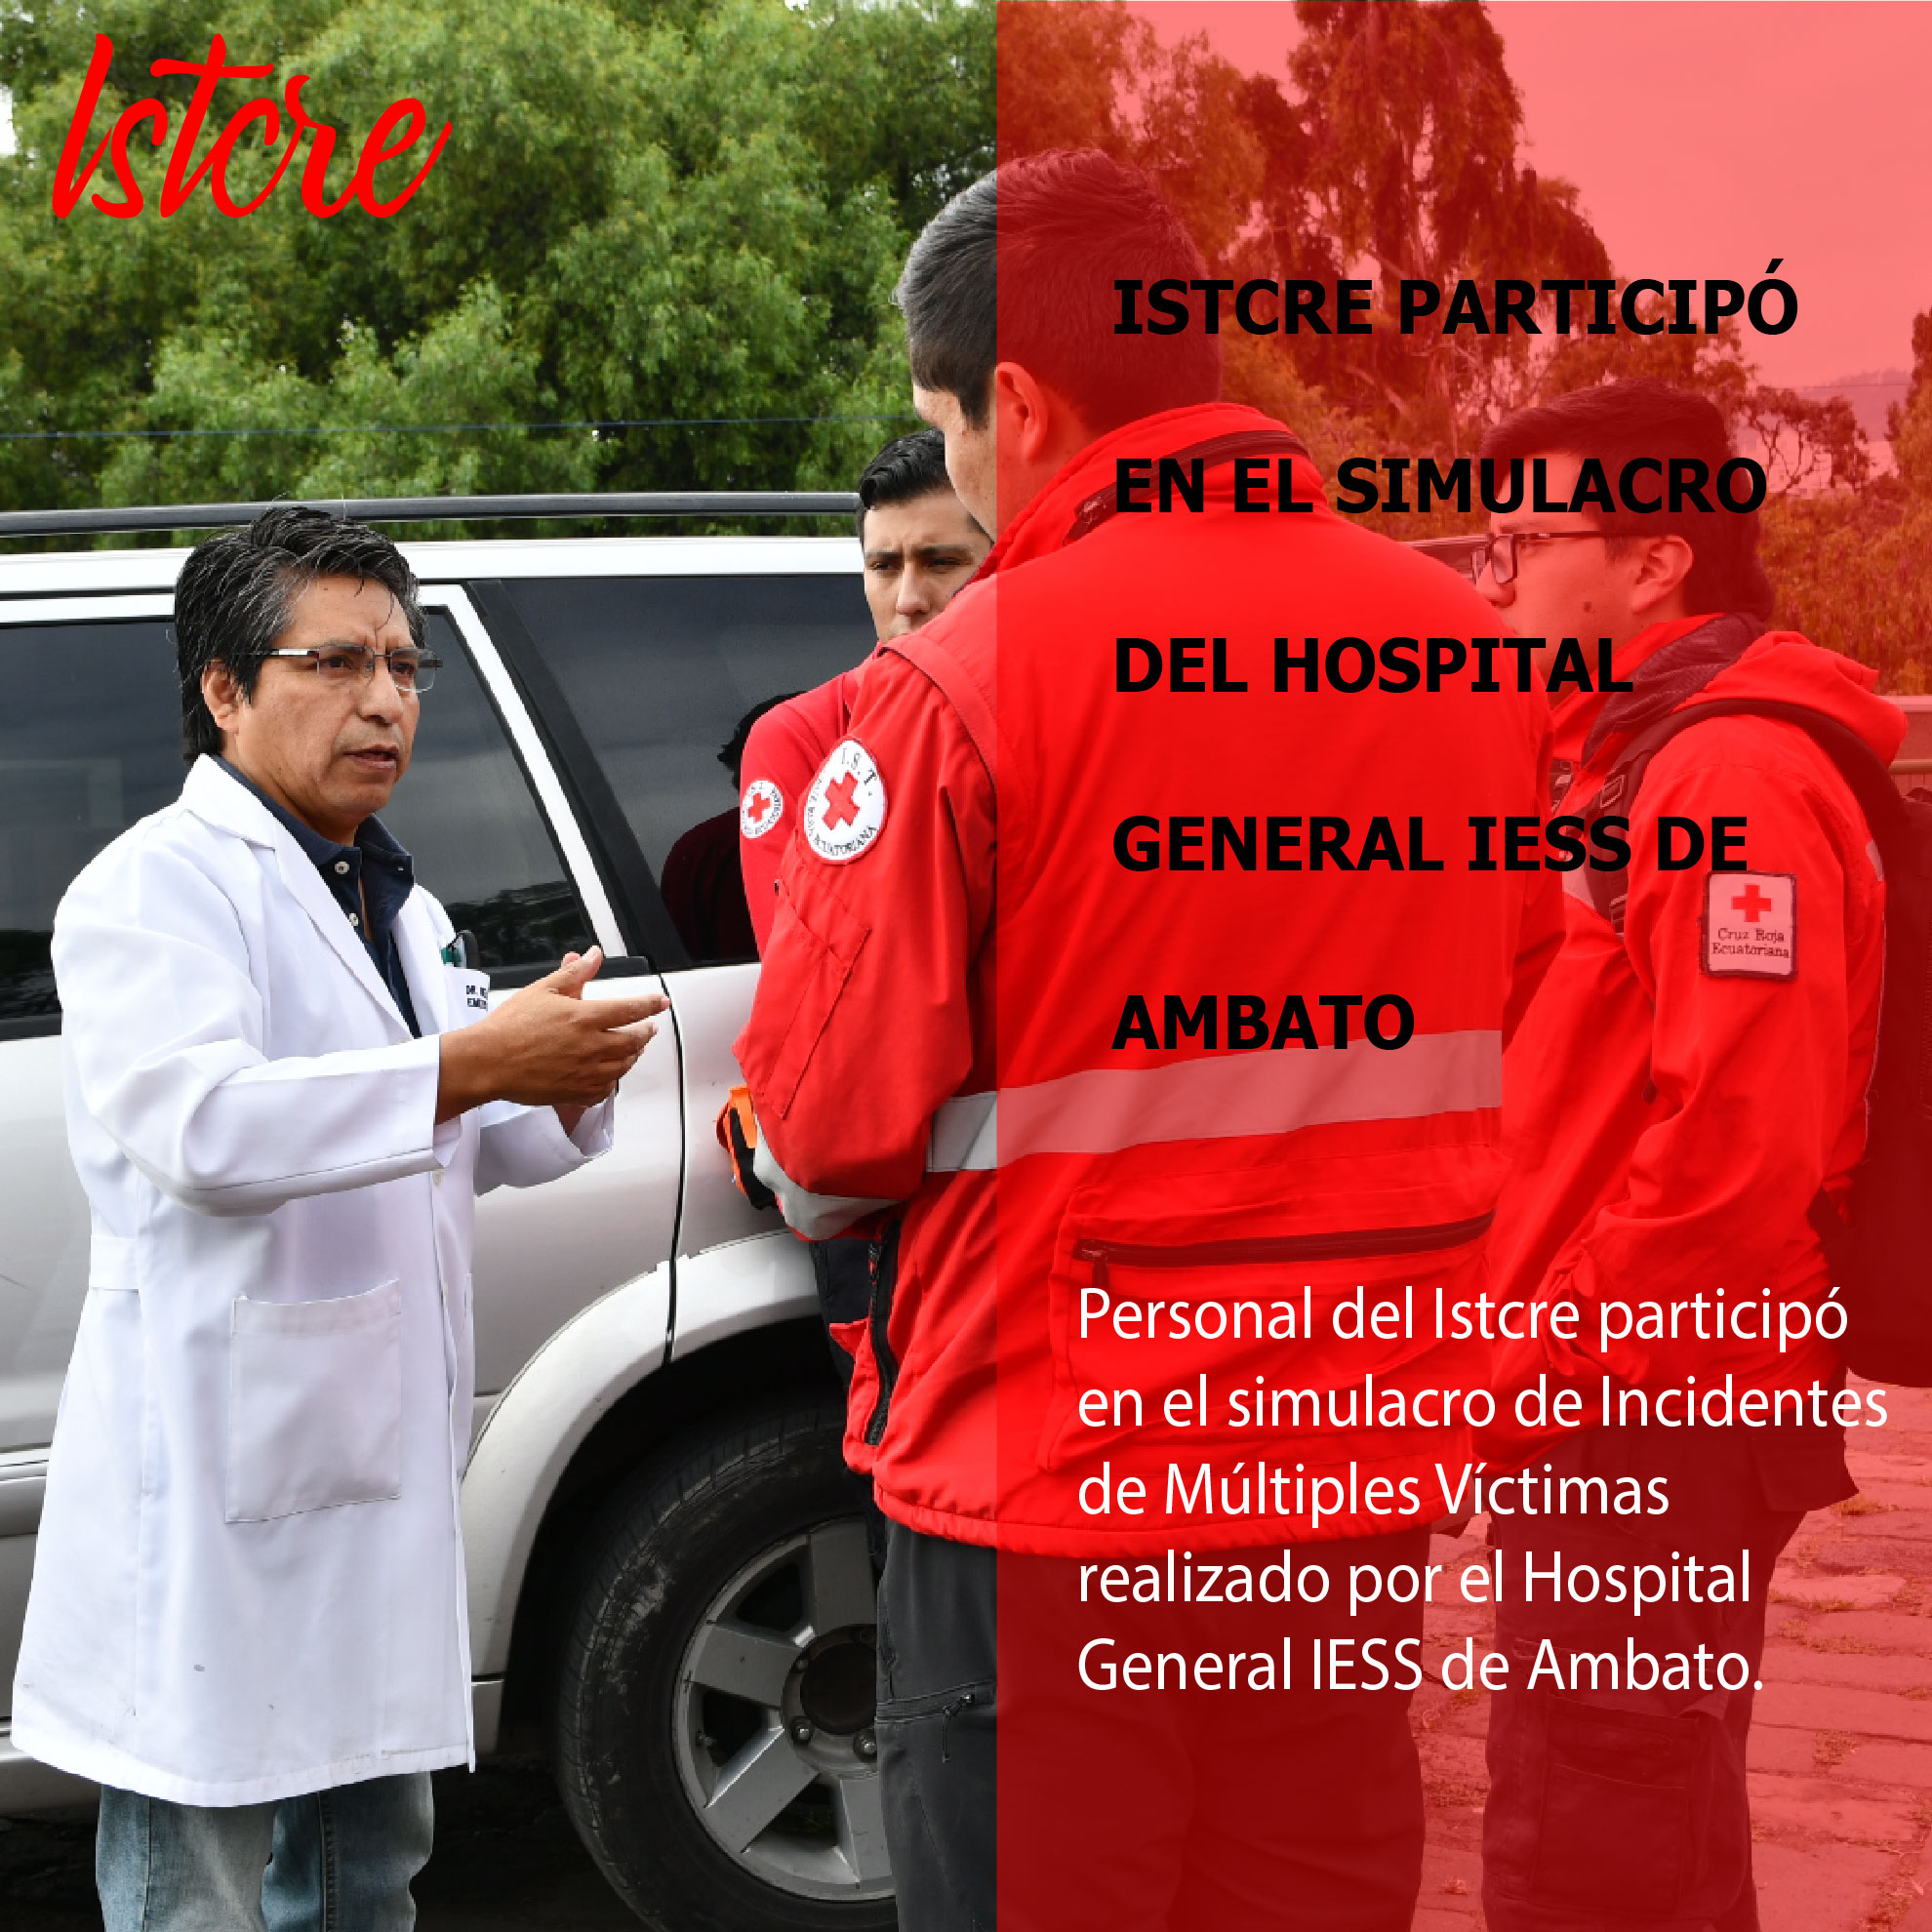 ISTCRE PARTICIPÓ EN EL SIMULACRO DEL HOSPITAL GENERAL IESS DE AMBATO